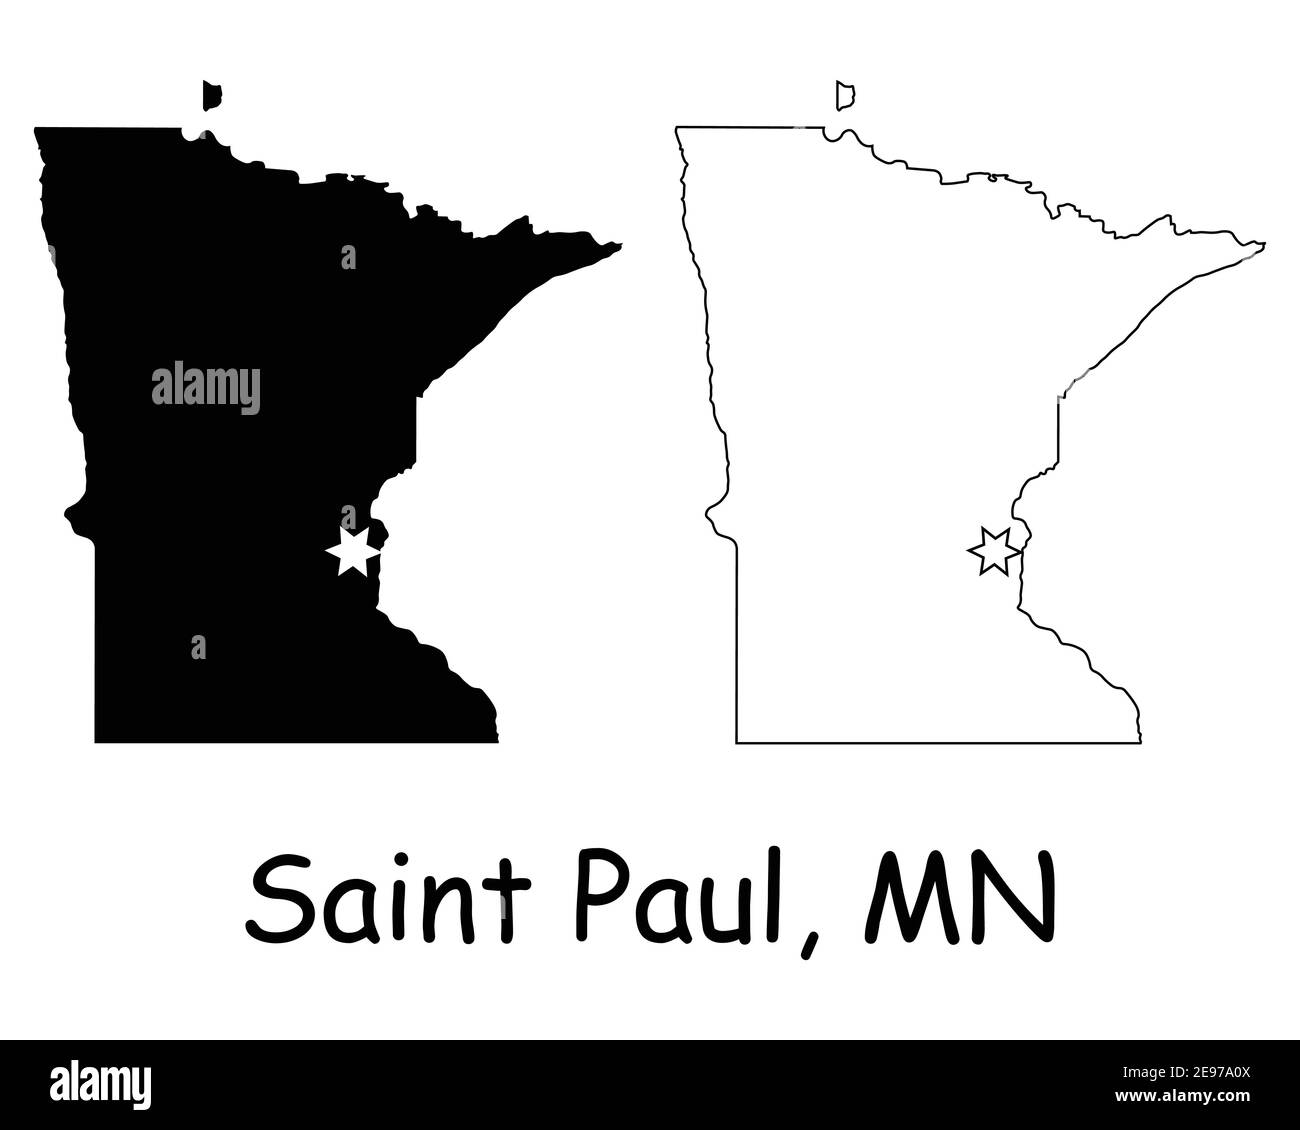 Minnesota MN state Map USA con Capital City Star a Saint Paul. Silhouette nera e profilo isolato su sfondo bianco. Vettore EPS Illustrazione Vettoriale